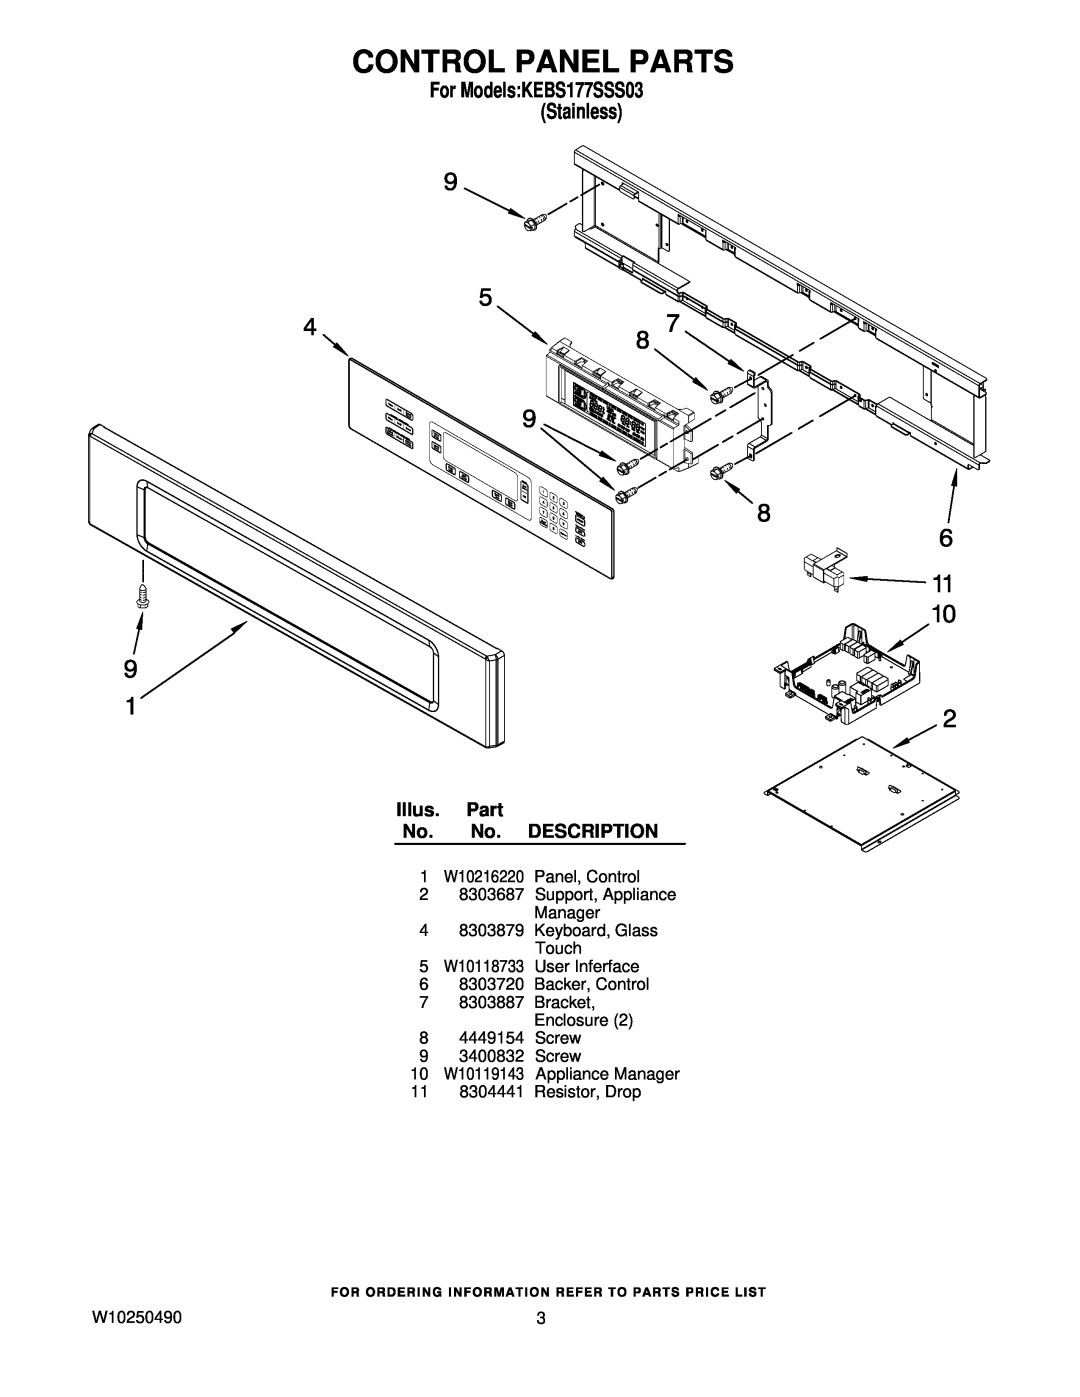 KitchenAid KEBS177SSS03 manual Control Panel Parts, Illus. Part No. No. DESCRIPTION, 11 8304441 Resistor, Drop, W10250490 